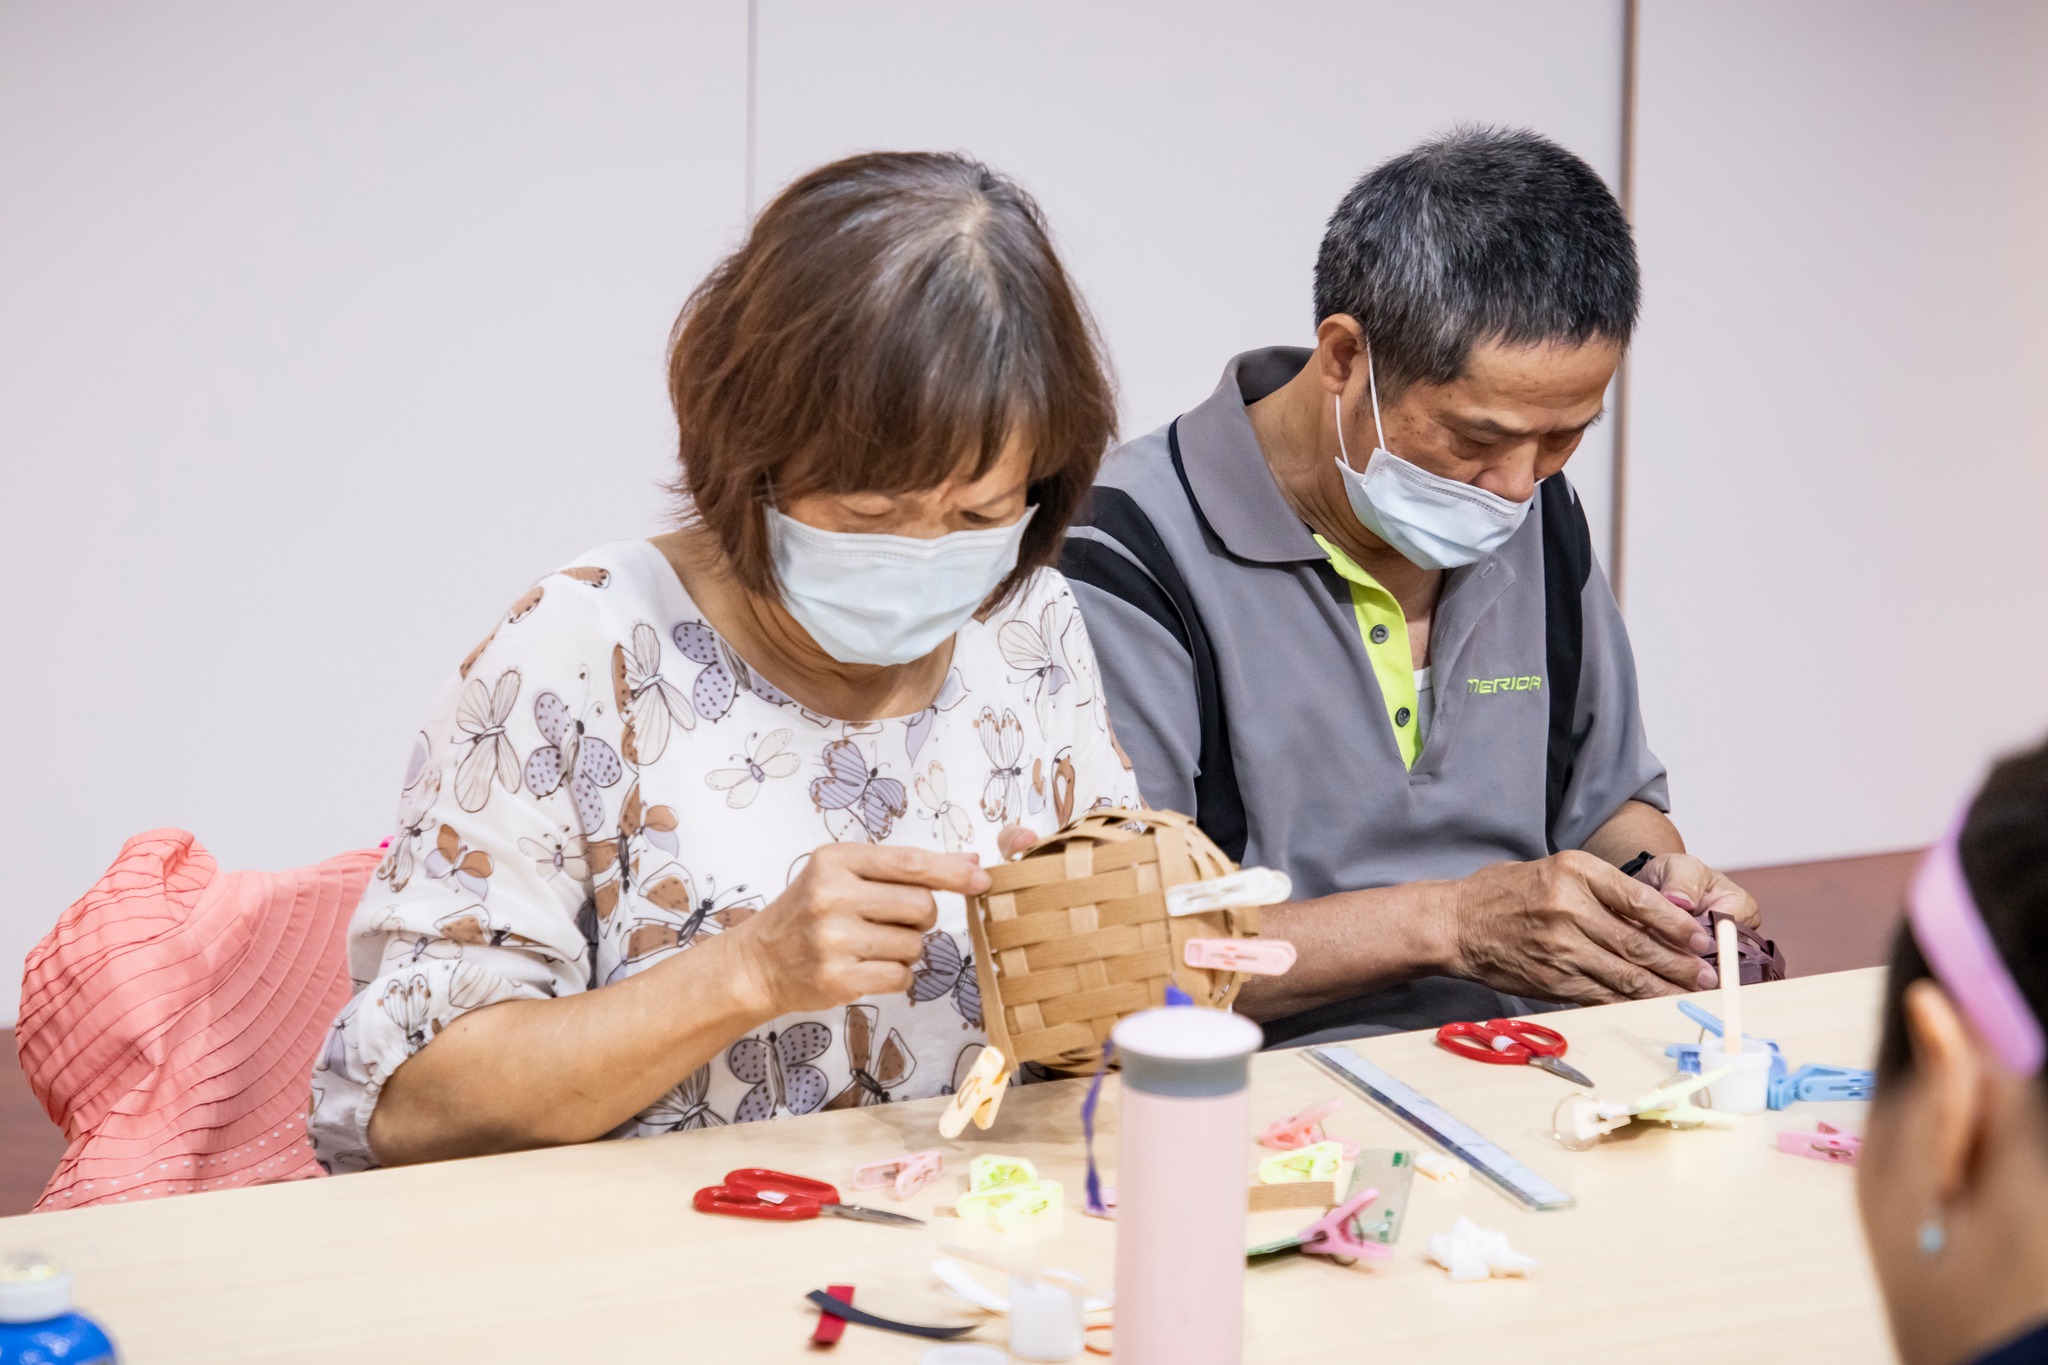 [教育推廣活動]「南島藝能手」原住民族傳統工藝體驗-9.9《PP帶編織置物盒》圖片2844